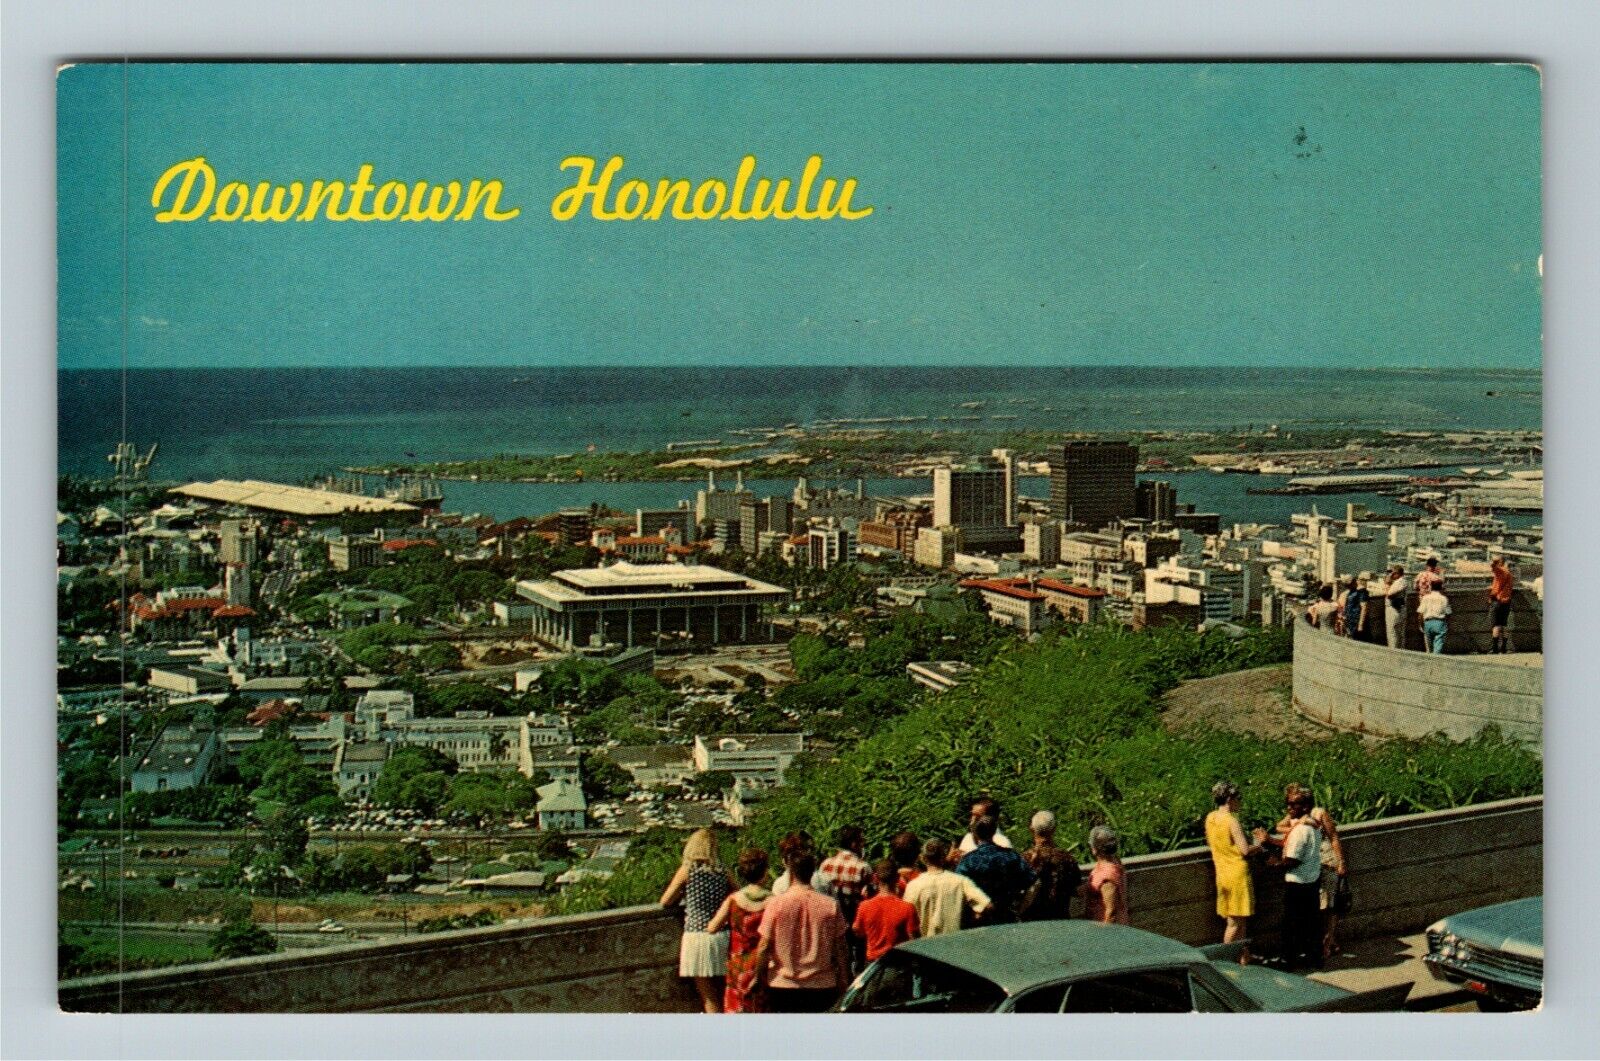 Honolulu Hi-Hawaii, View Overlooking Downtown, Vintage Postcard